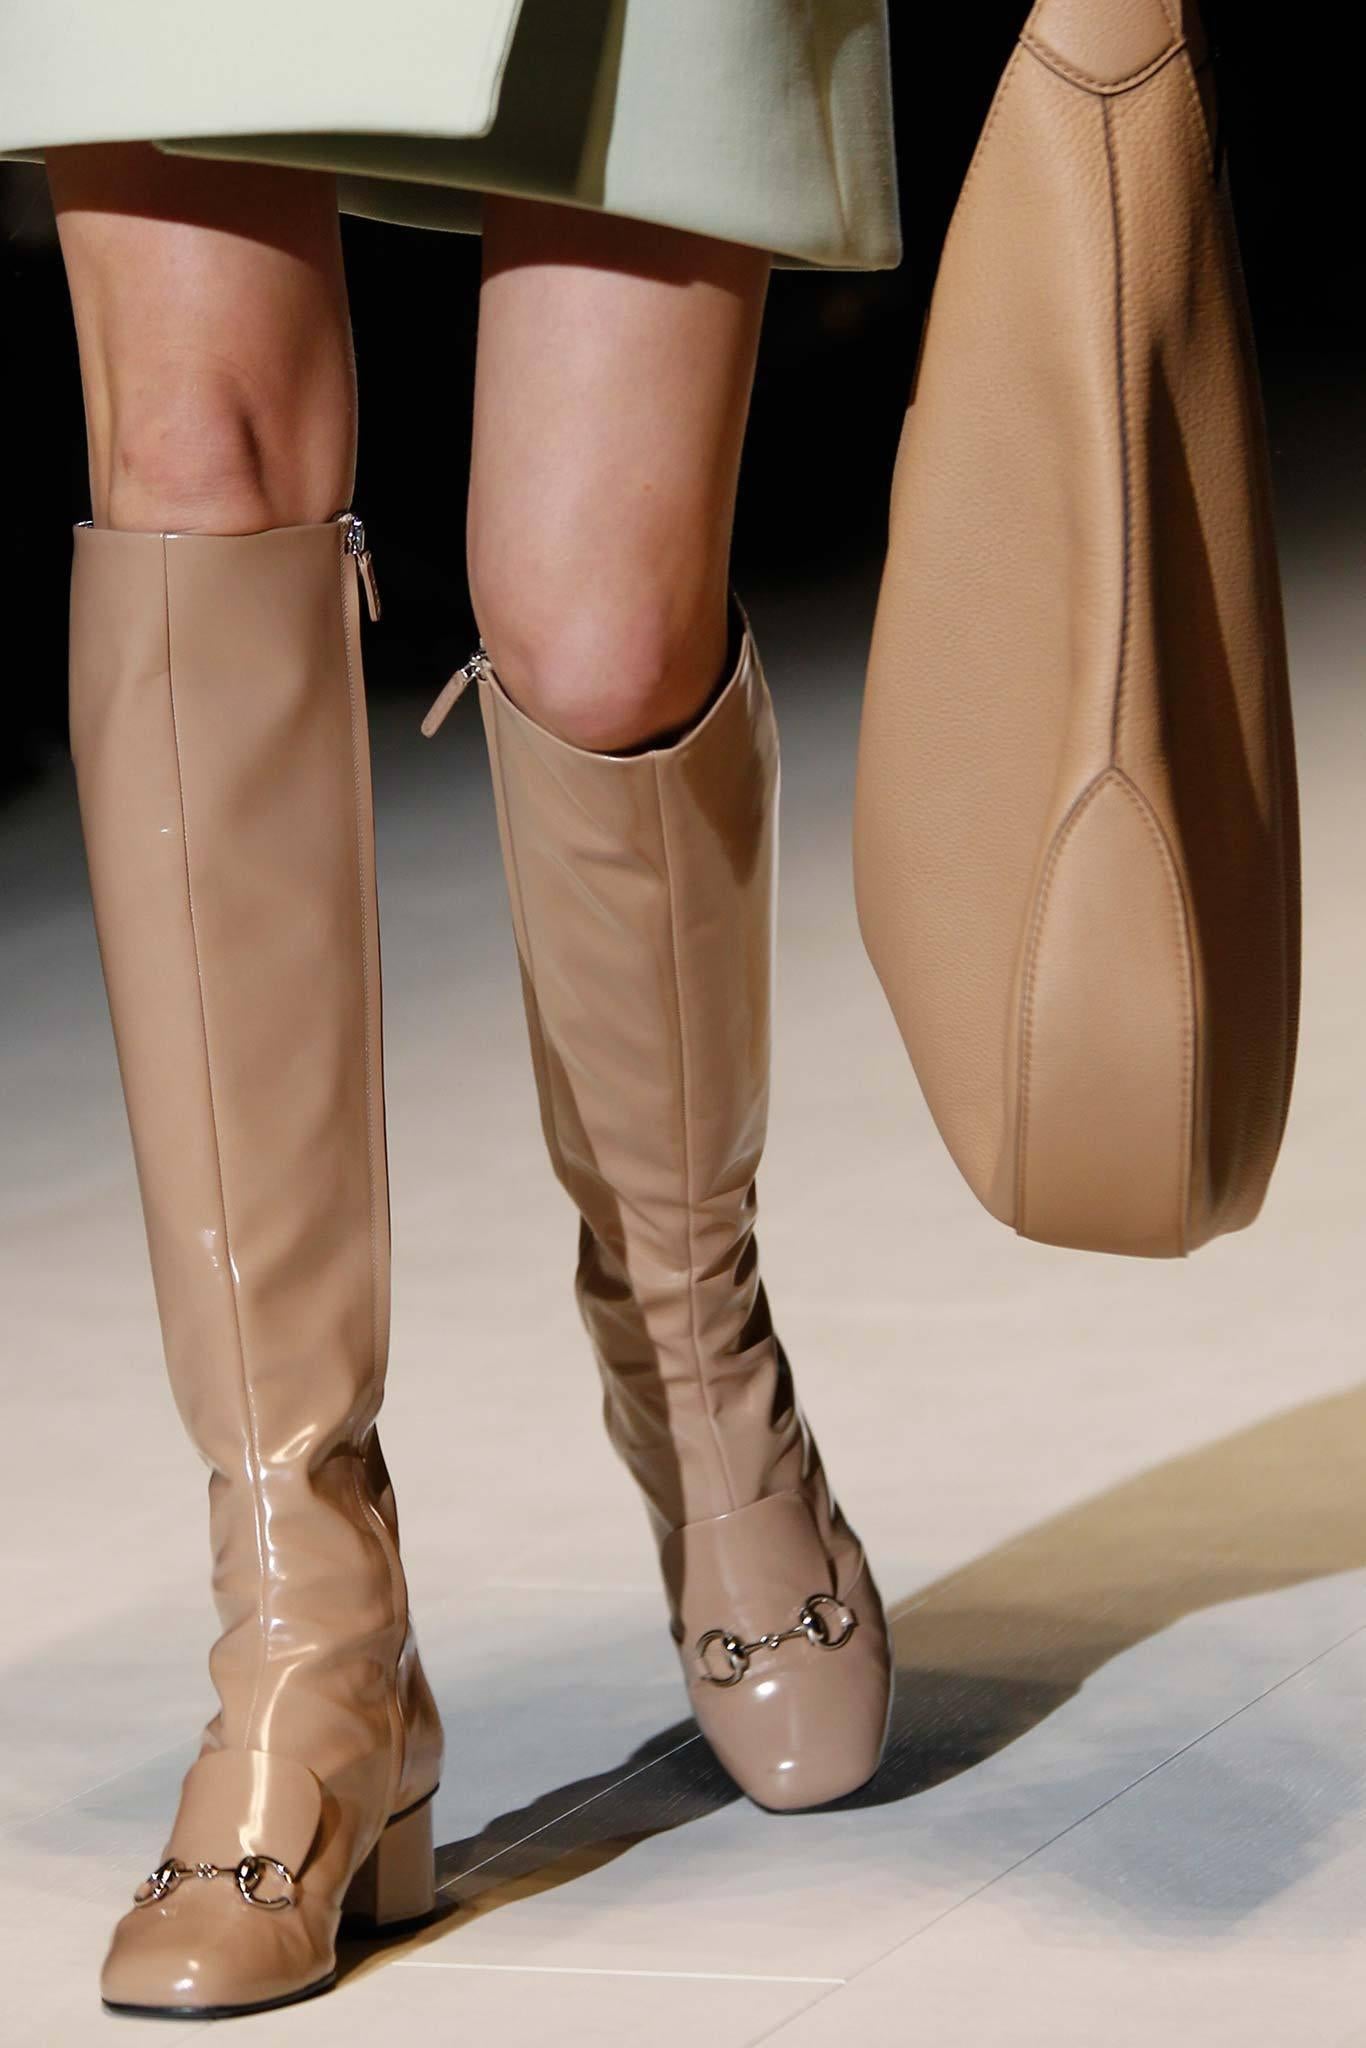 Nouveauté Gucci extra large sac Jackie O Gaga en cuir rose 3595 $ automne 2014 en vente 13